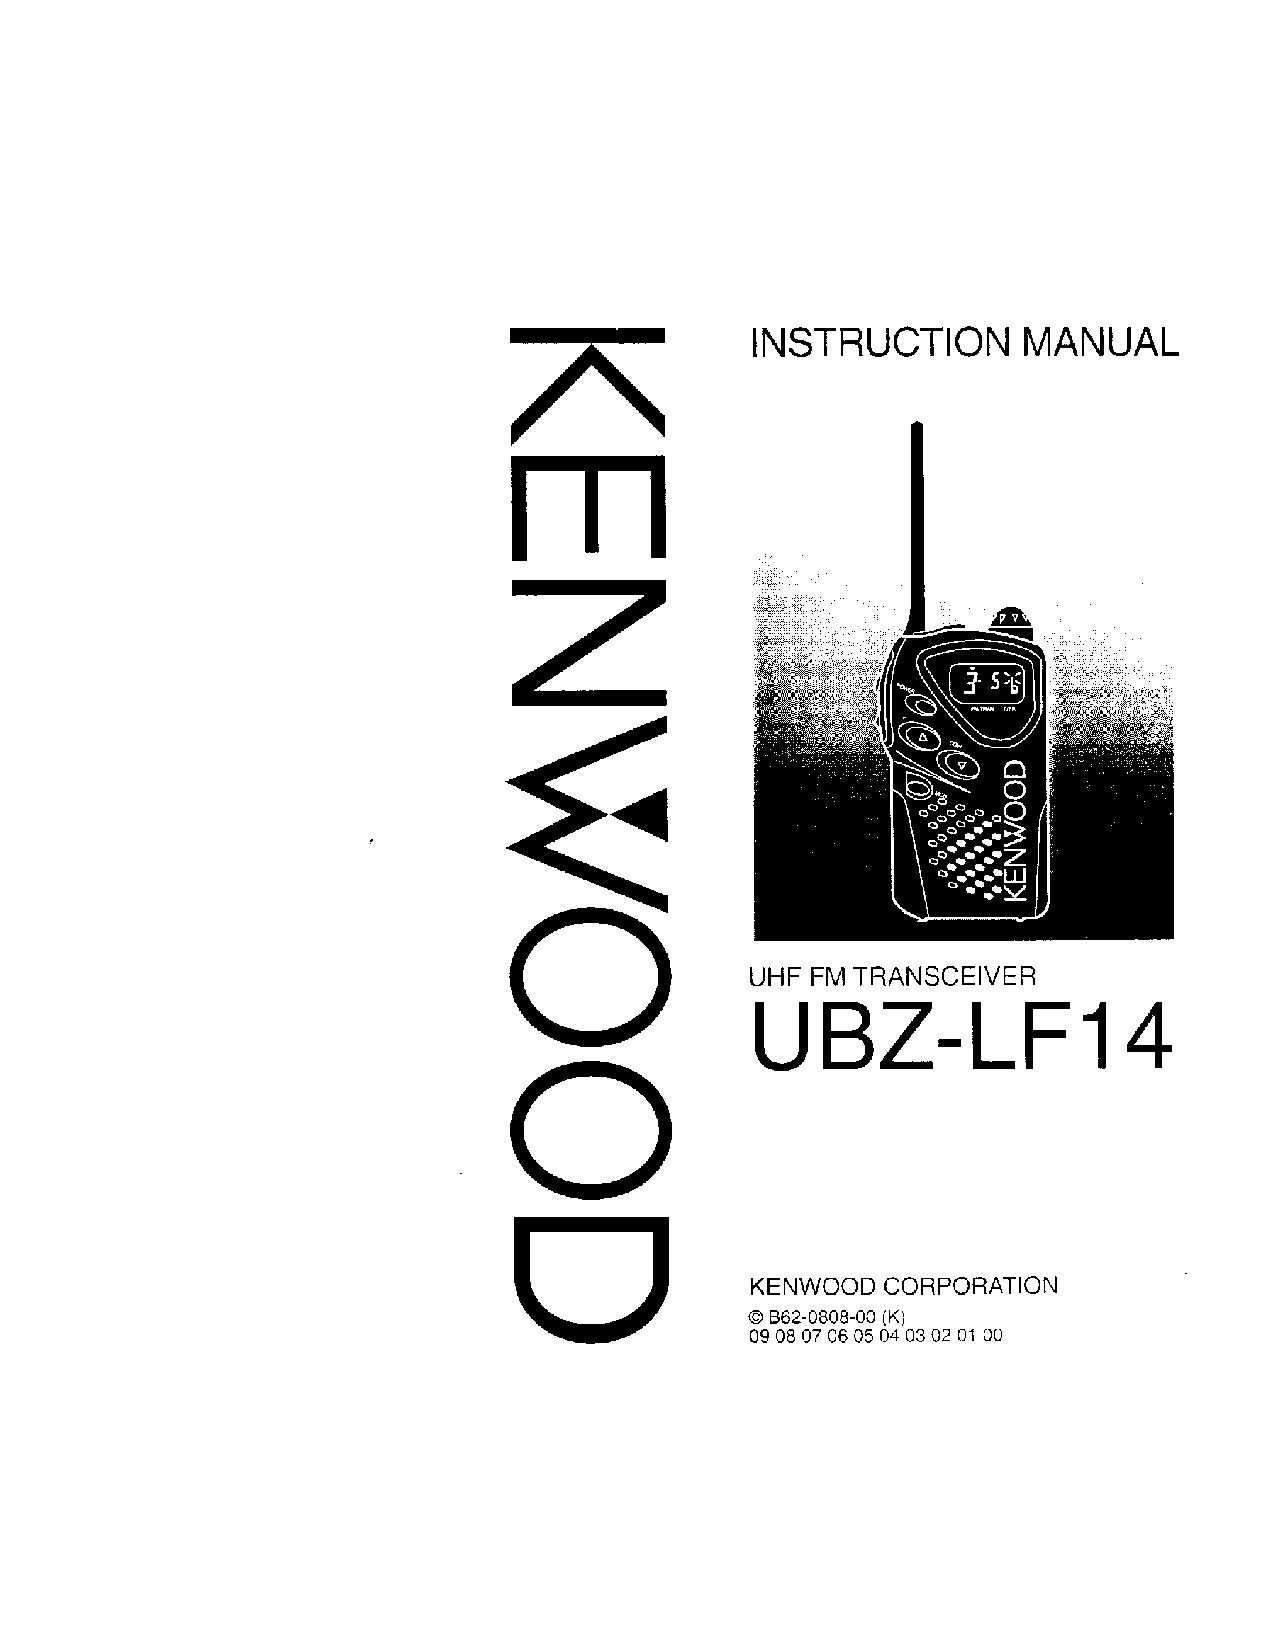 Kenwood UBZ-LF14 User Manual